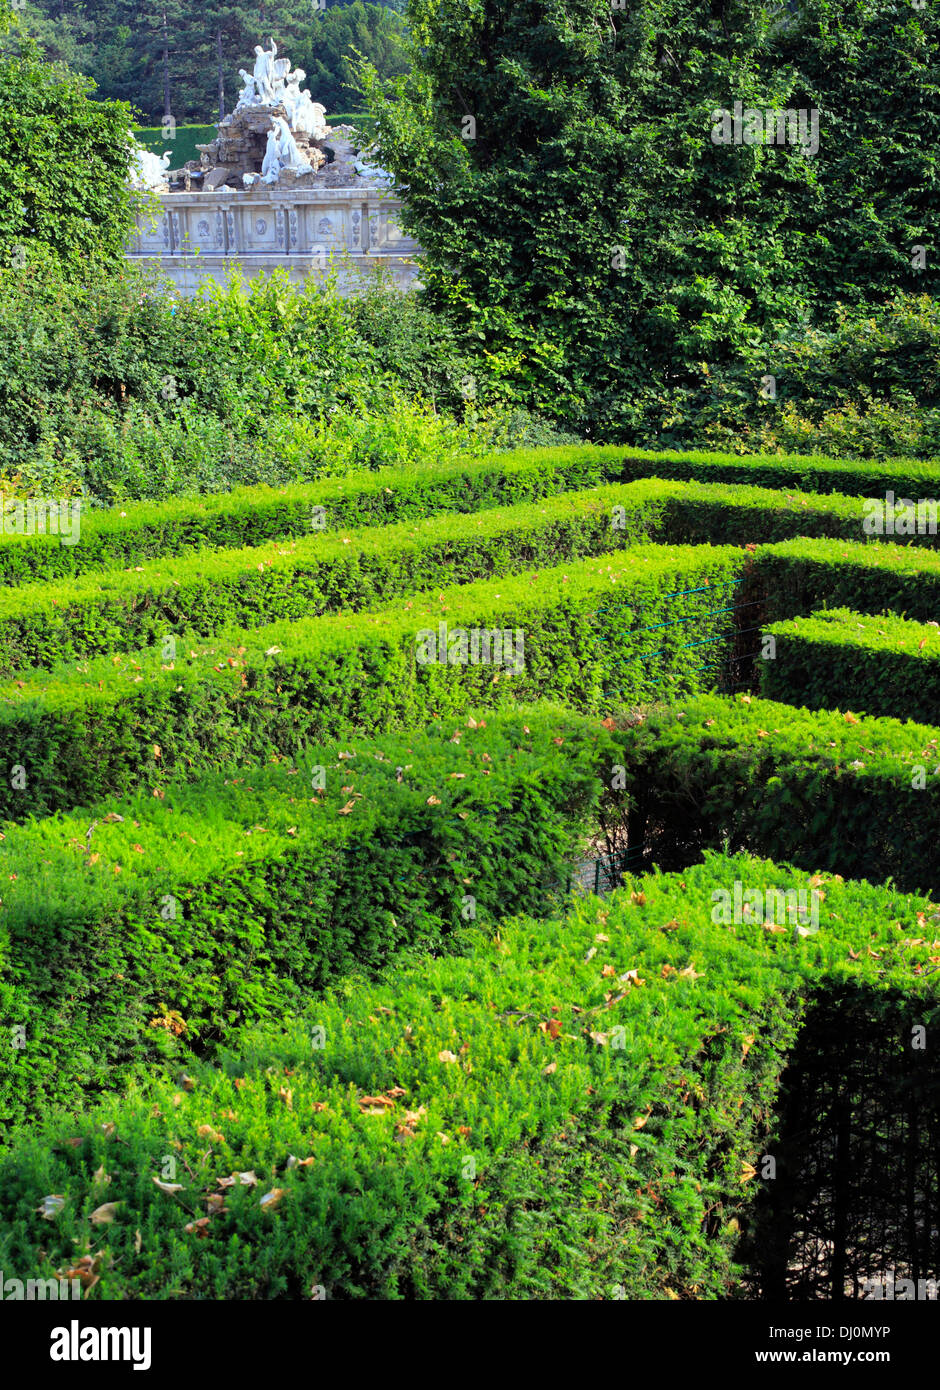 Maze in the garden, Schonbrunn Palace, Vienna, Austria Stock Photo